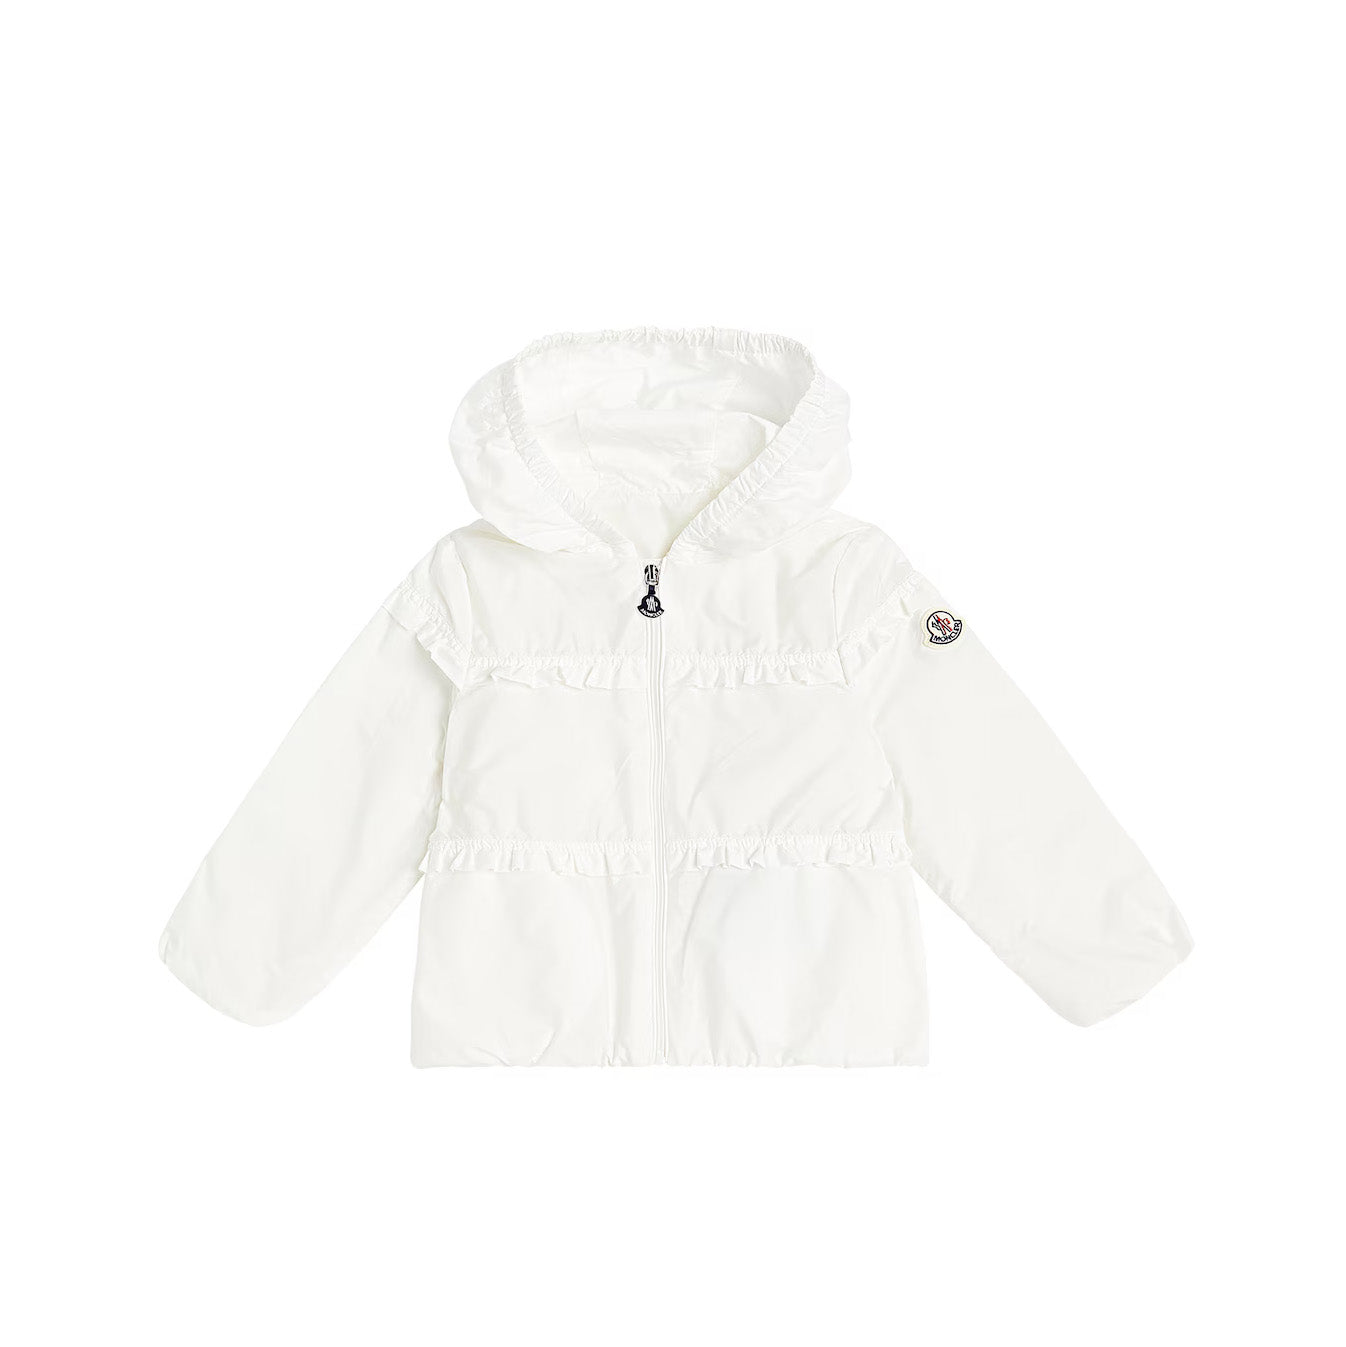 Baby Girls White Zip-Up Jacket